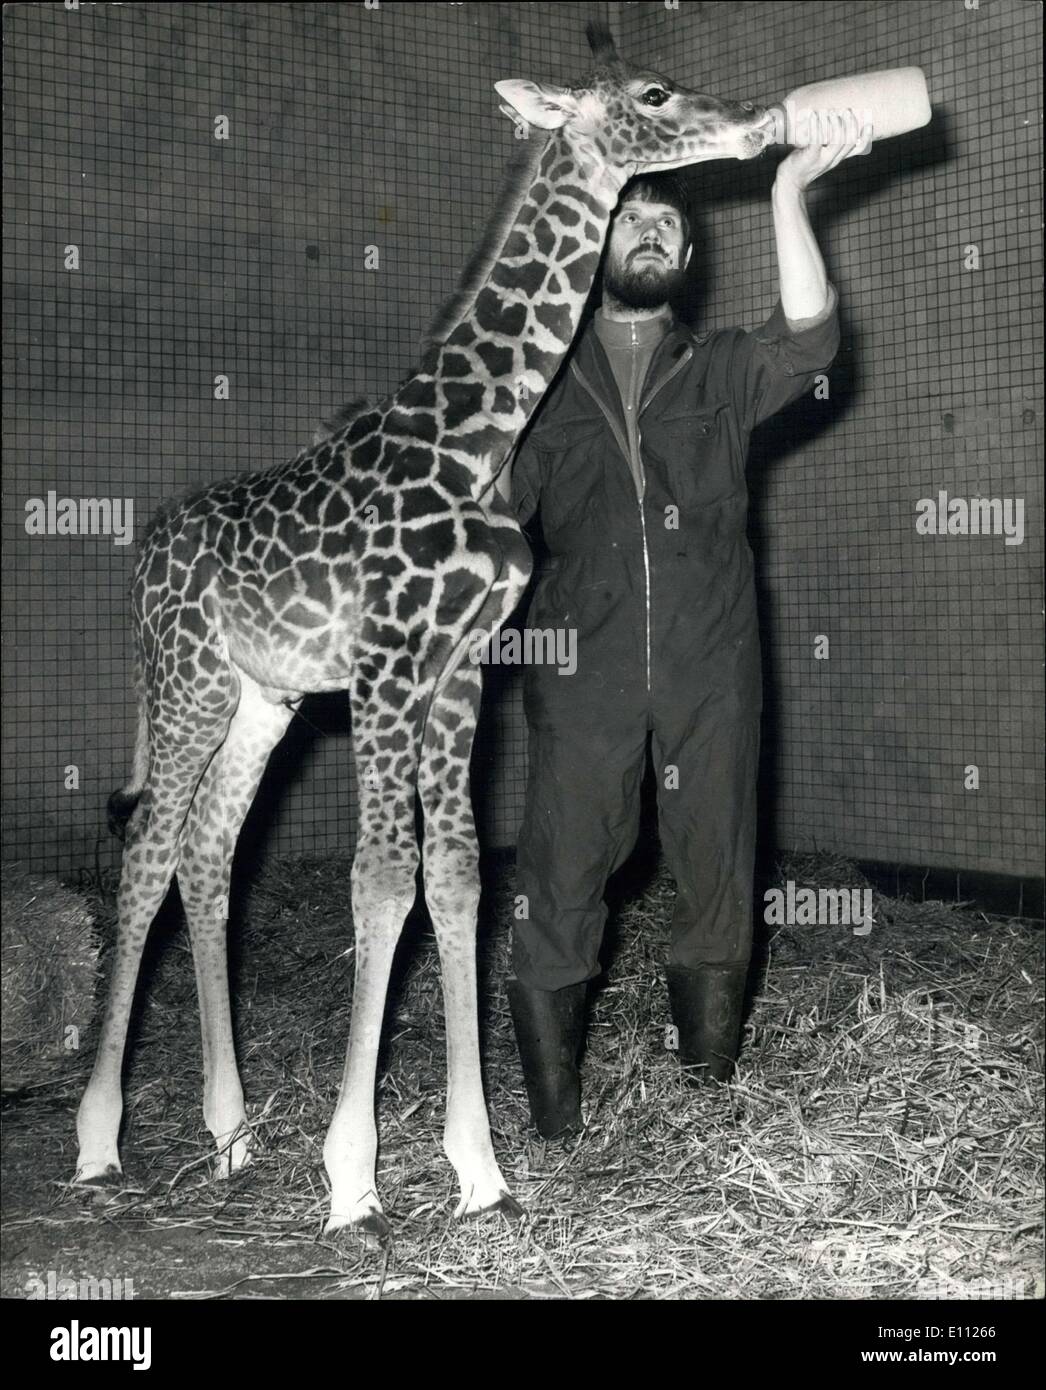 22 gennaio 1975 - Una giraffa Bambino nato presso il London Zoo: un nuovo arrivo al London Zoo è 'John' una giraffa bambino che è nato il Foto Stock